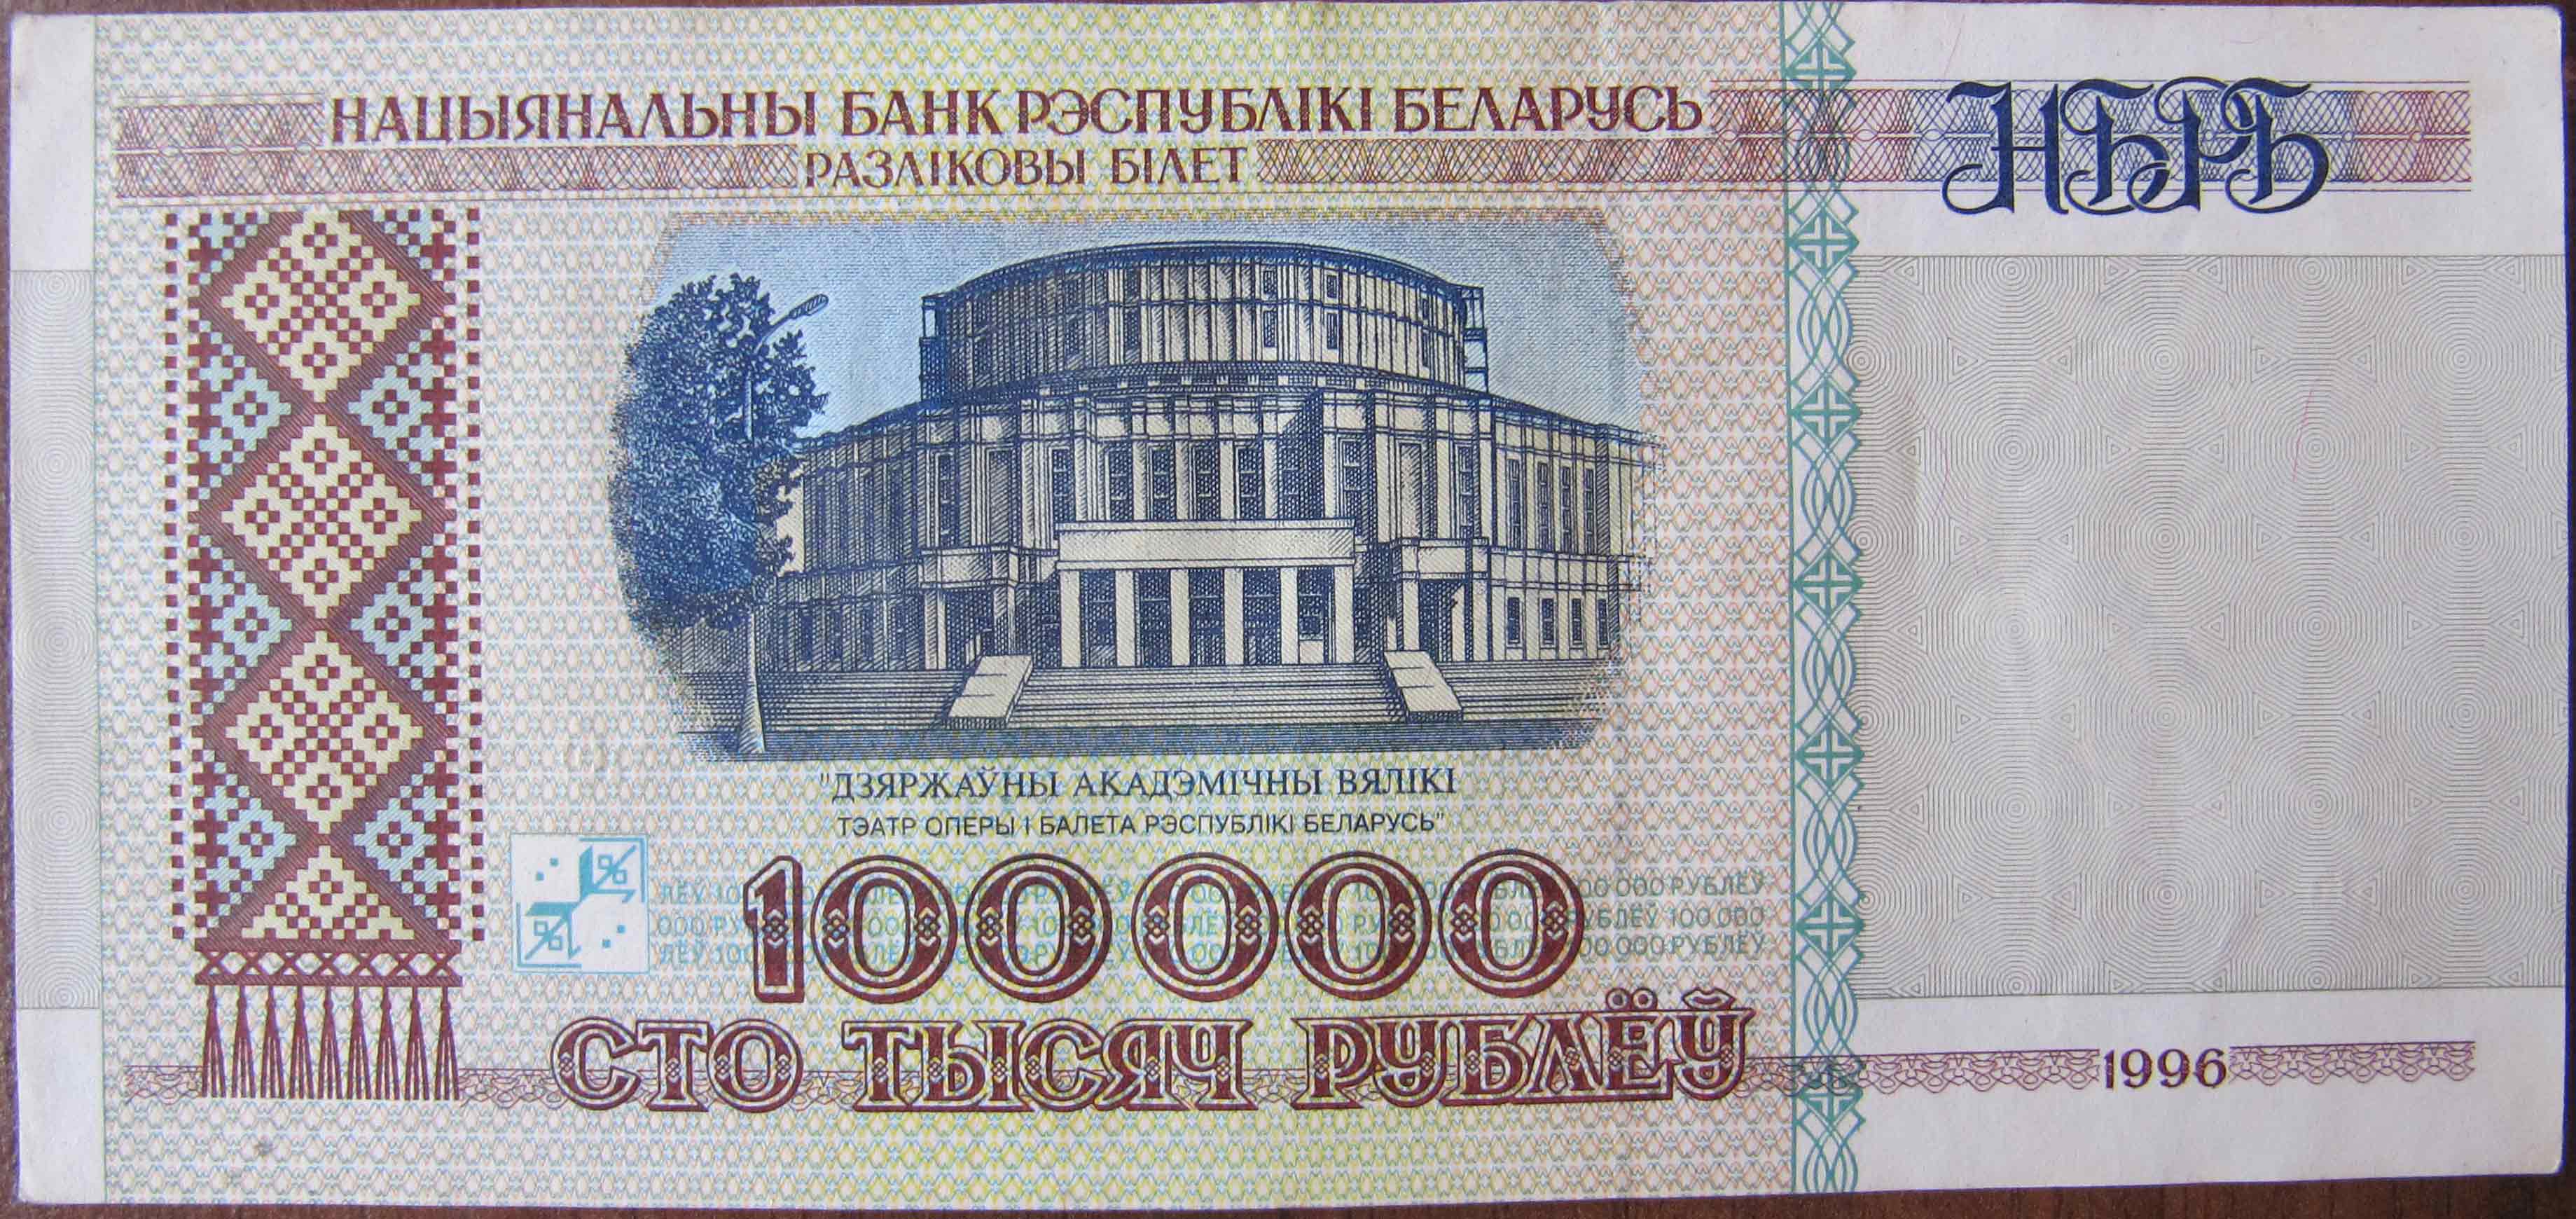 Получаем до 100 000 рублей от Тинькофф – Telegraph